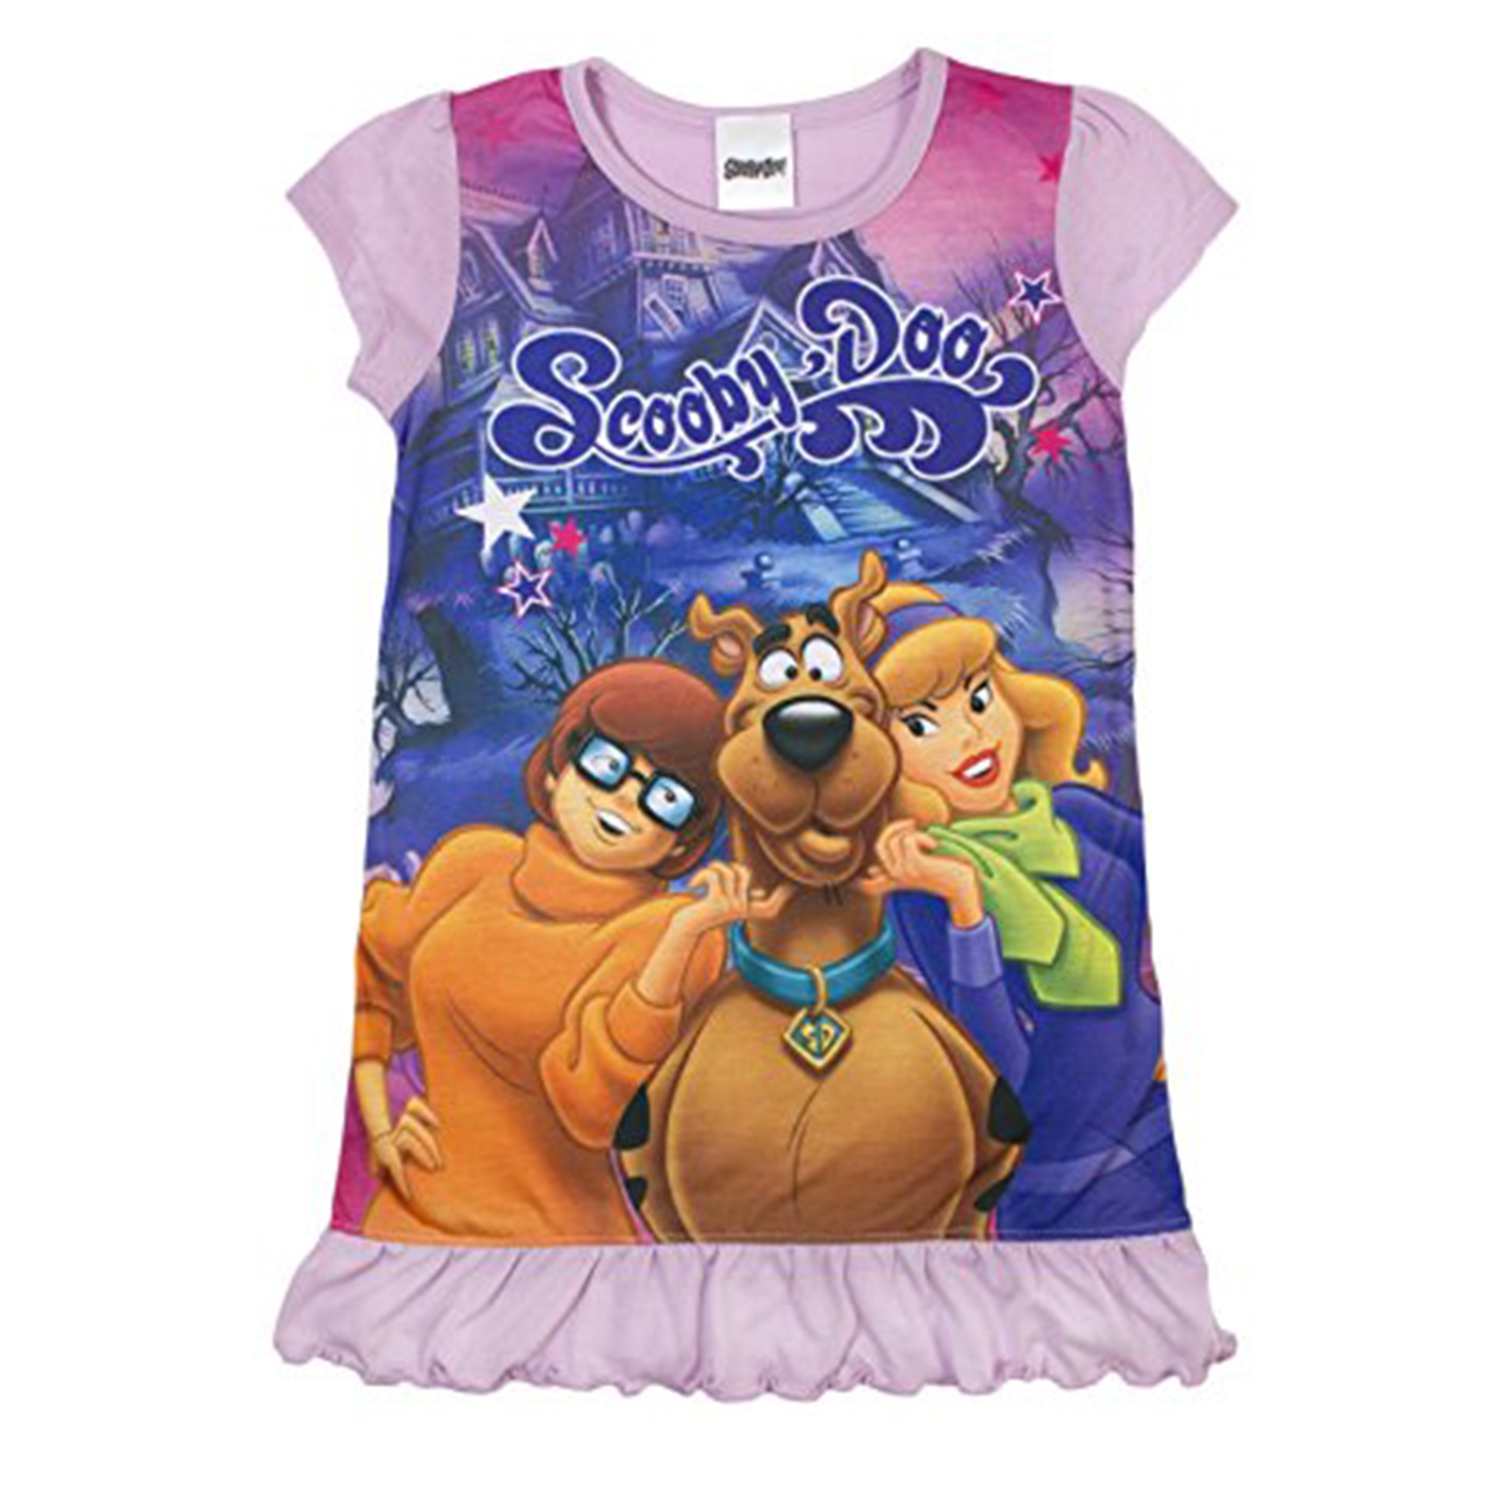 Scooby Doo 'Girls' Nightie 7 8 Years